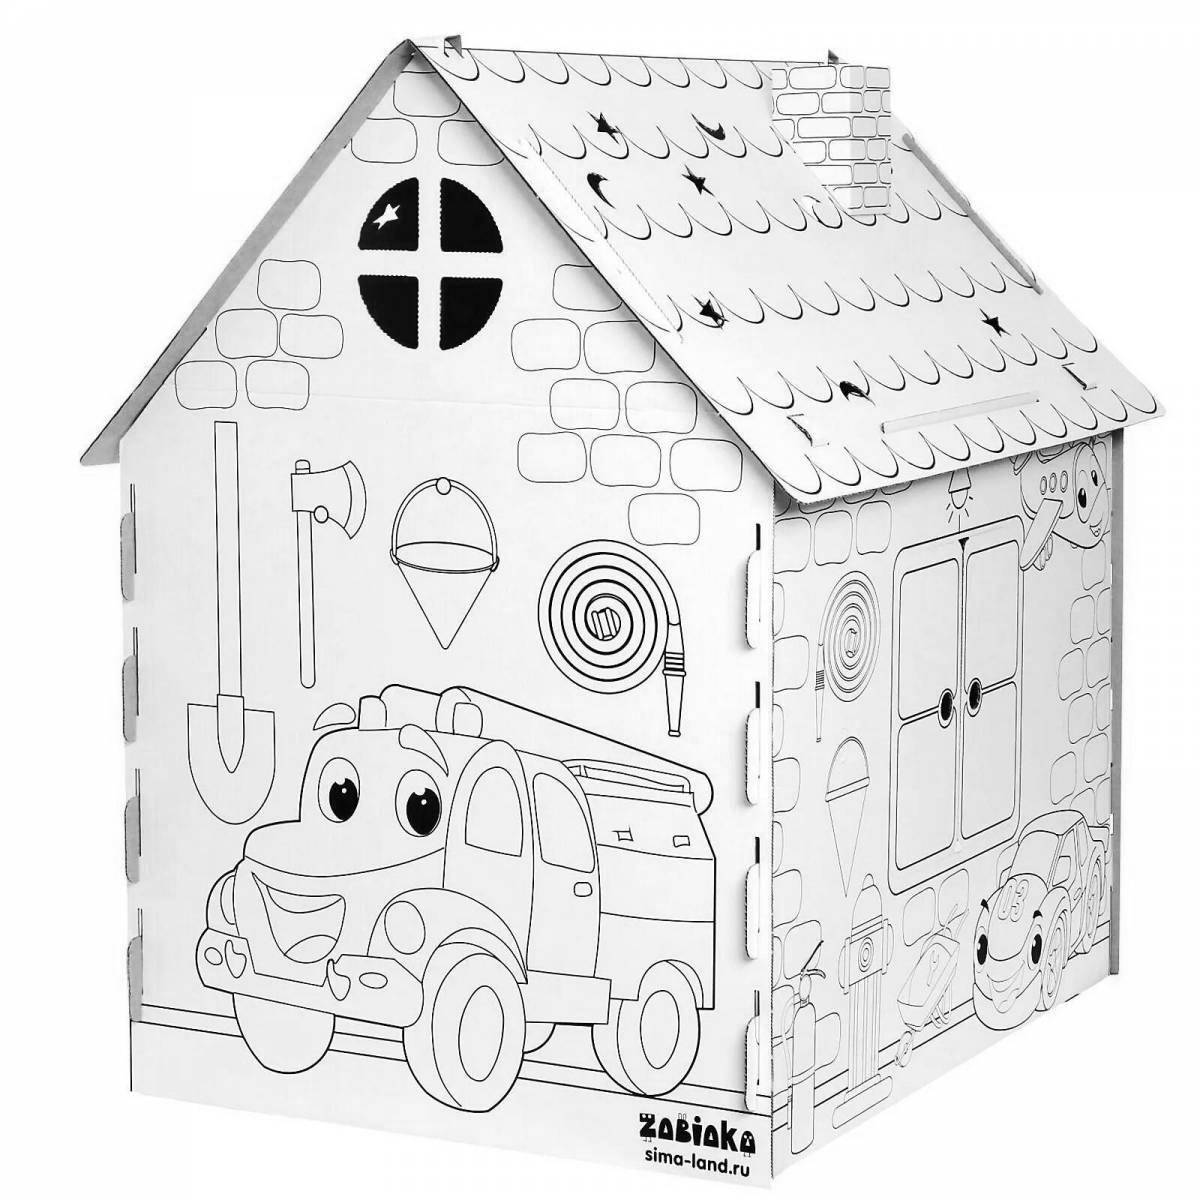 Цветная раскраска картонного домика для малышей